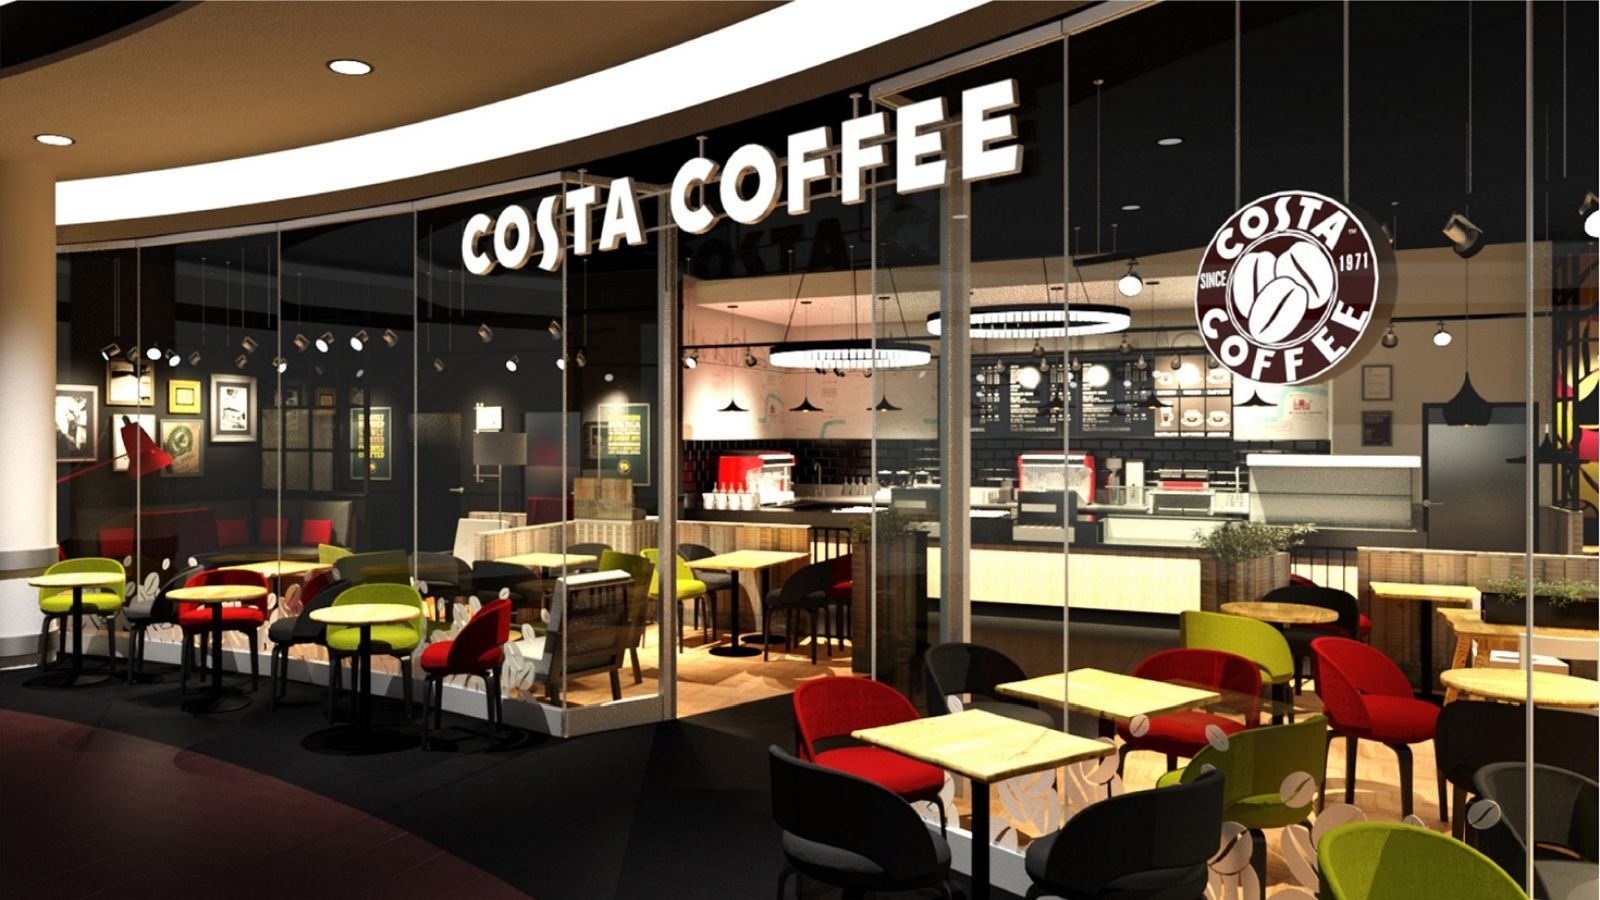 Costa Coffee rozstrzygnęła przetarg Unique One mediarun costa coffe